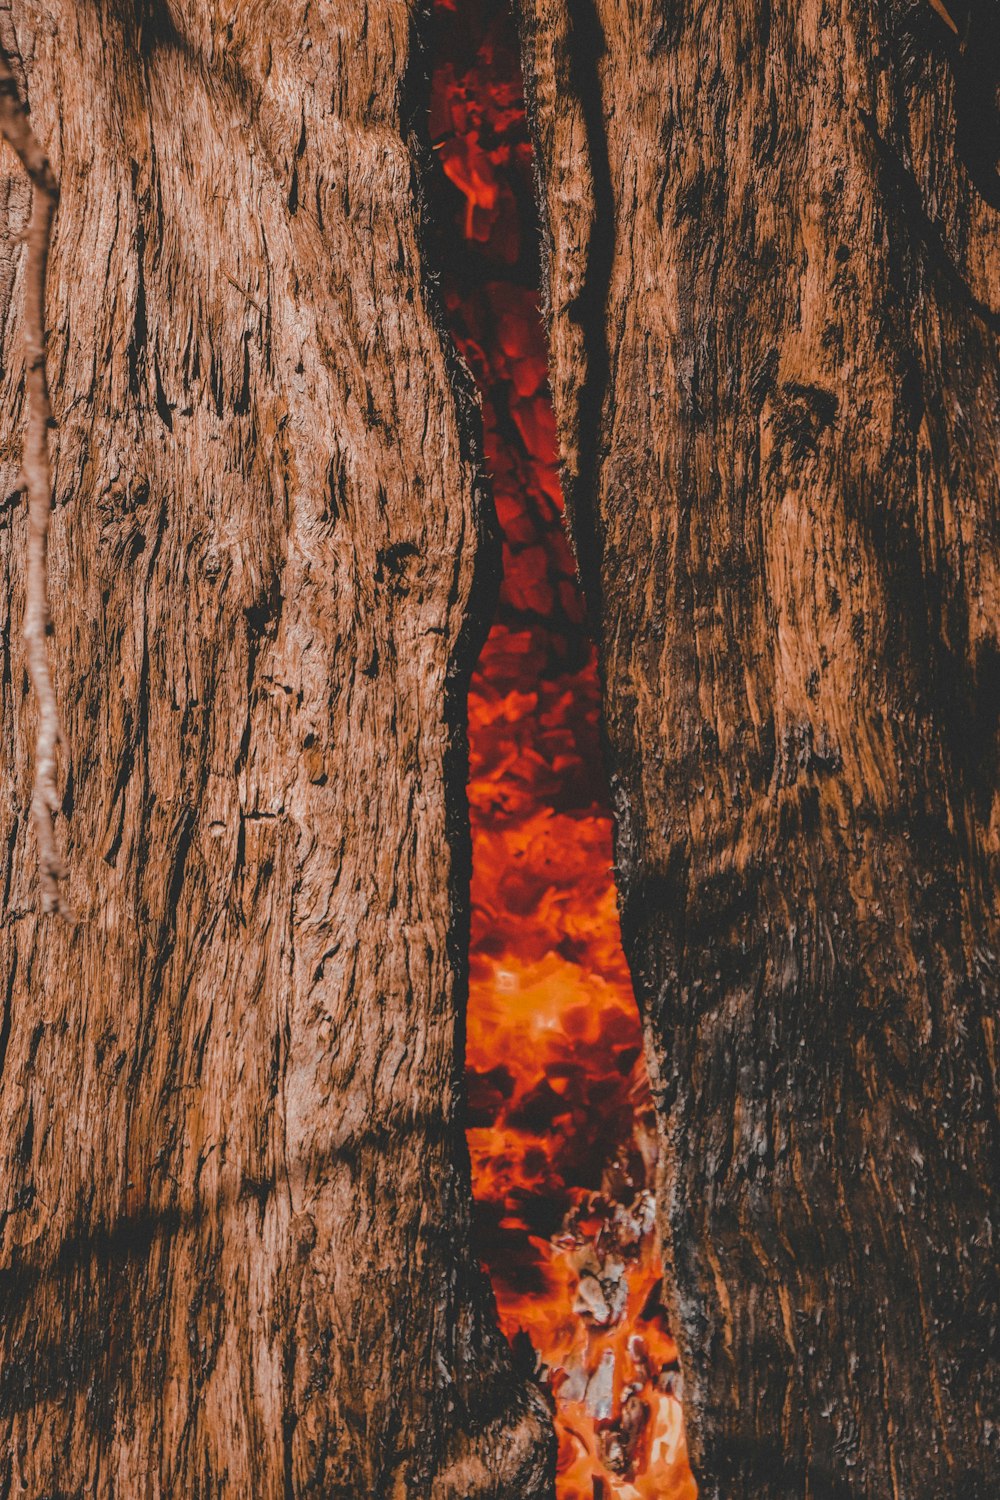 um close up de uma substância vermelha em uma árvore